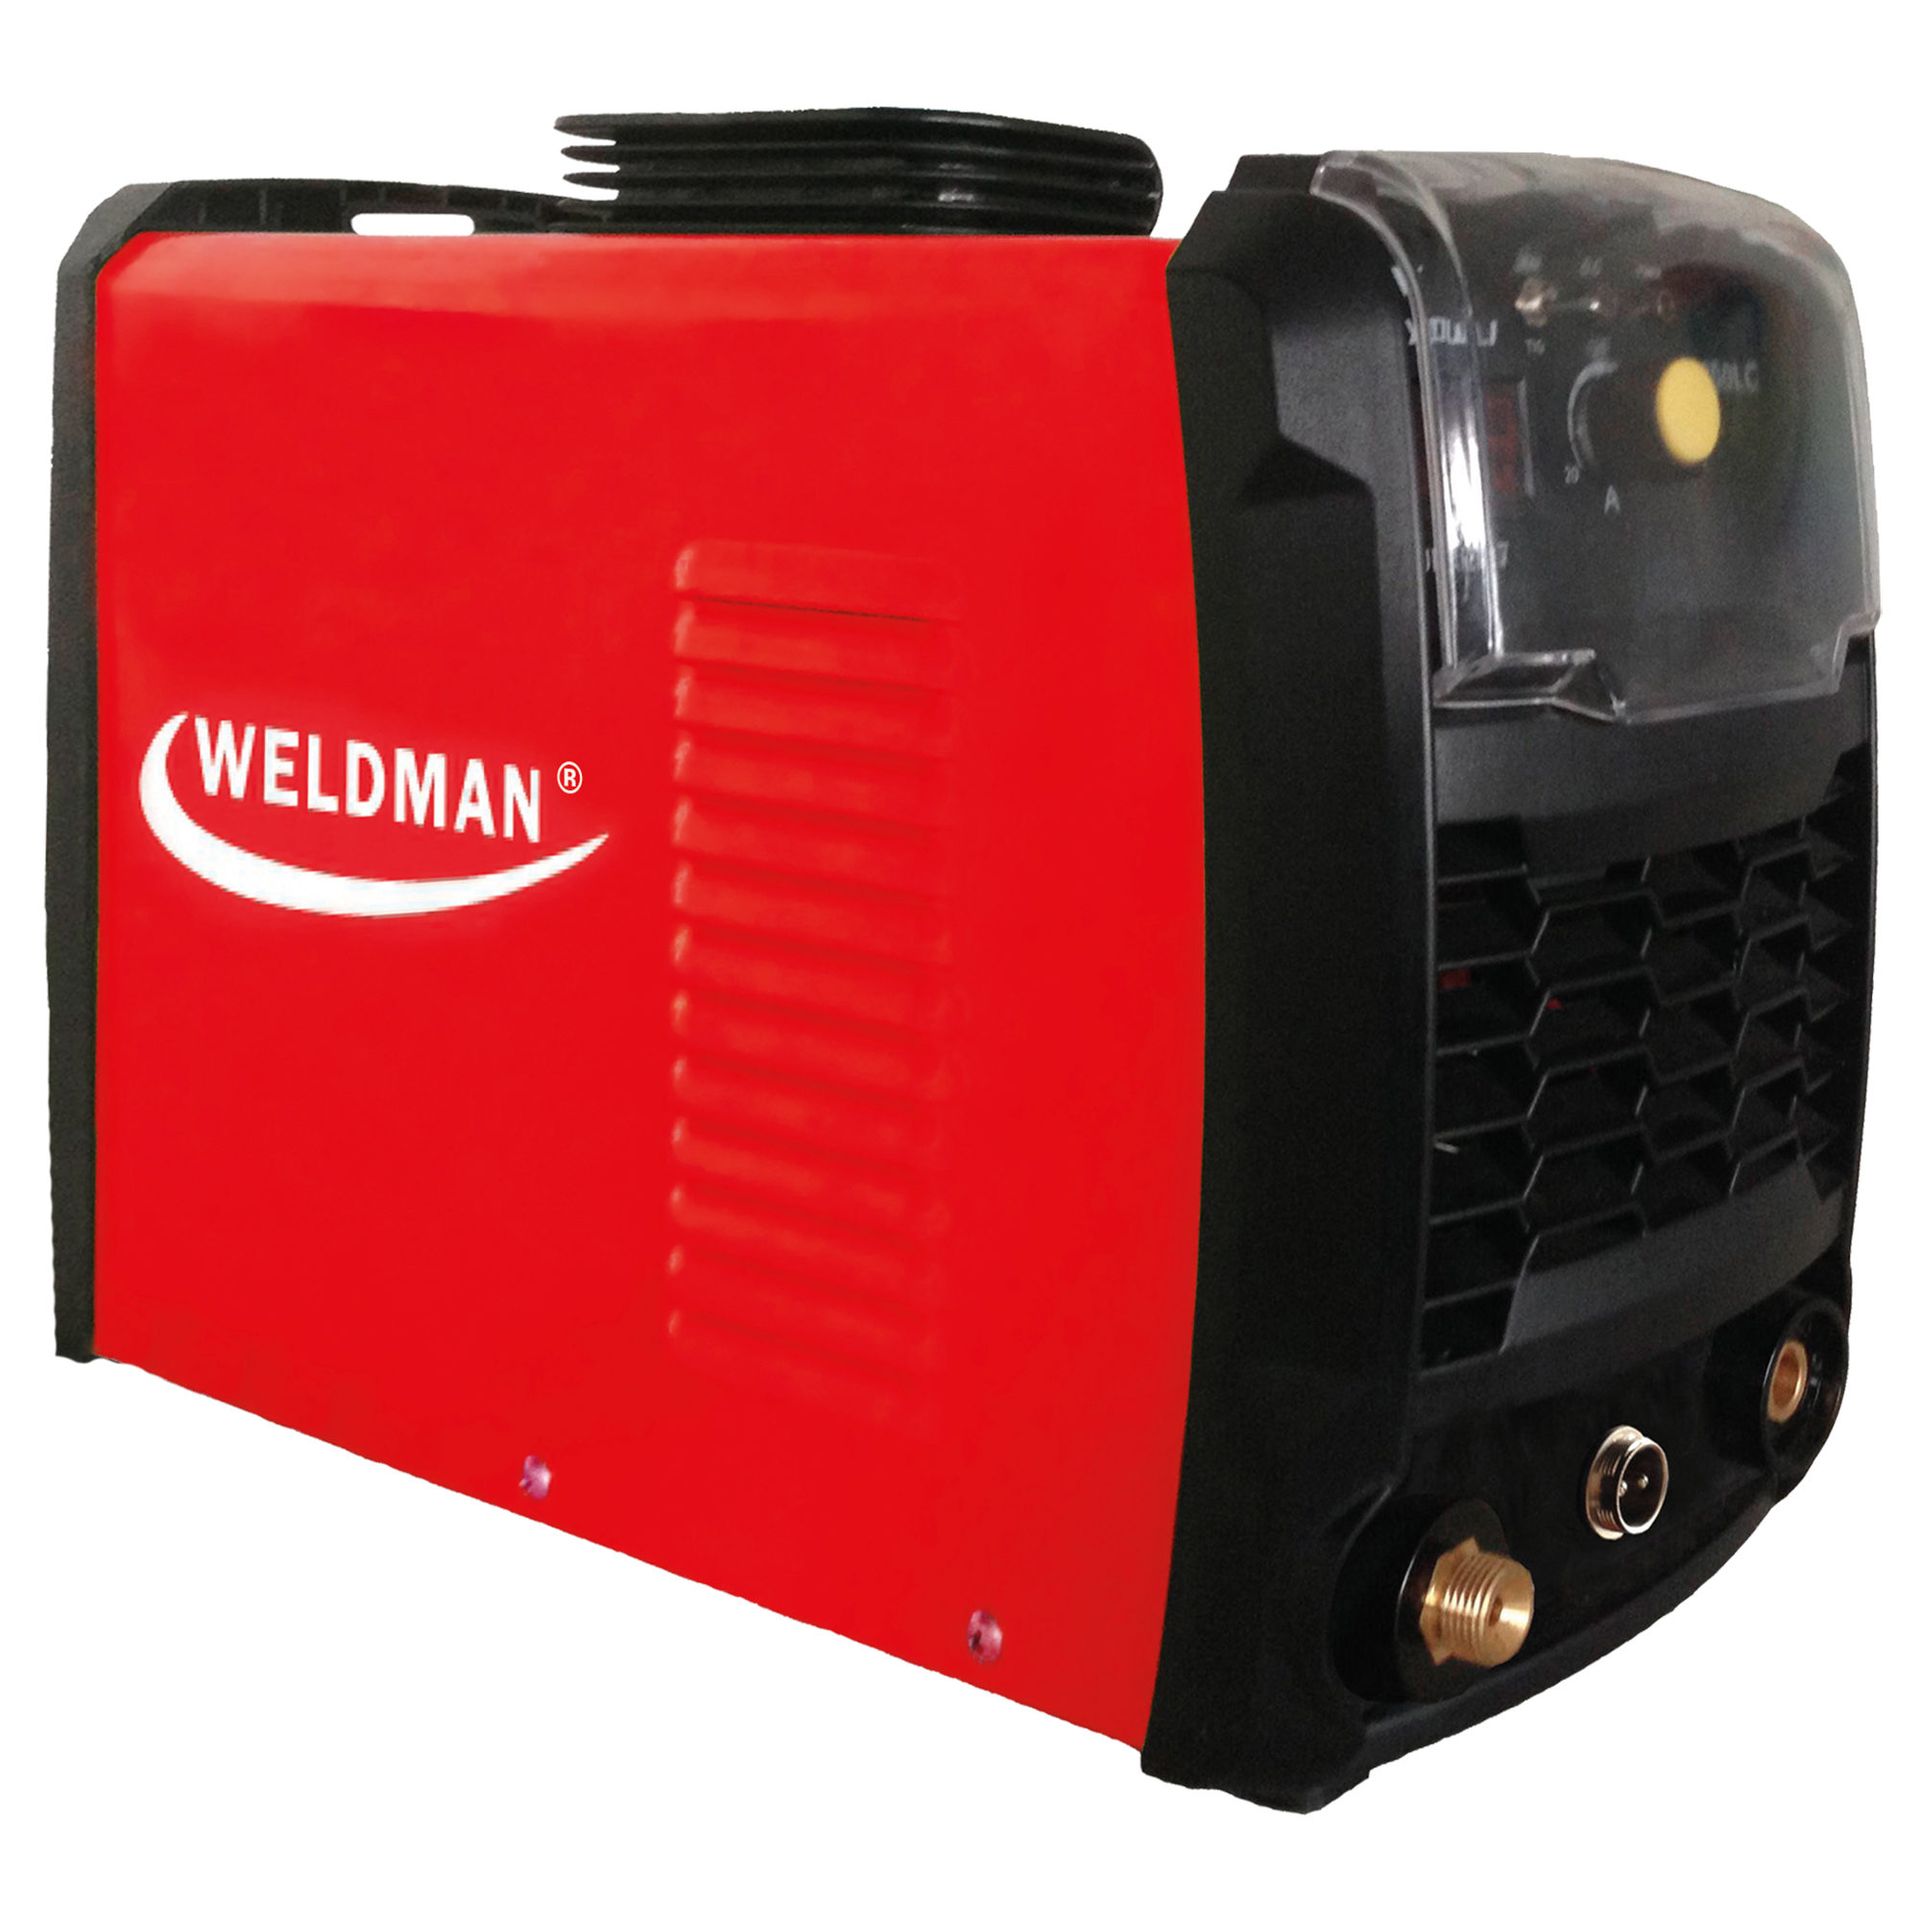 Weldman Plasma 40 przecinarka plazmowa 230V 40A 103301